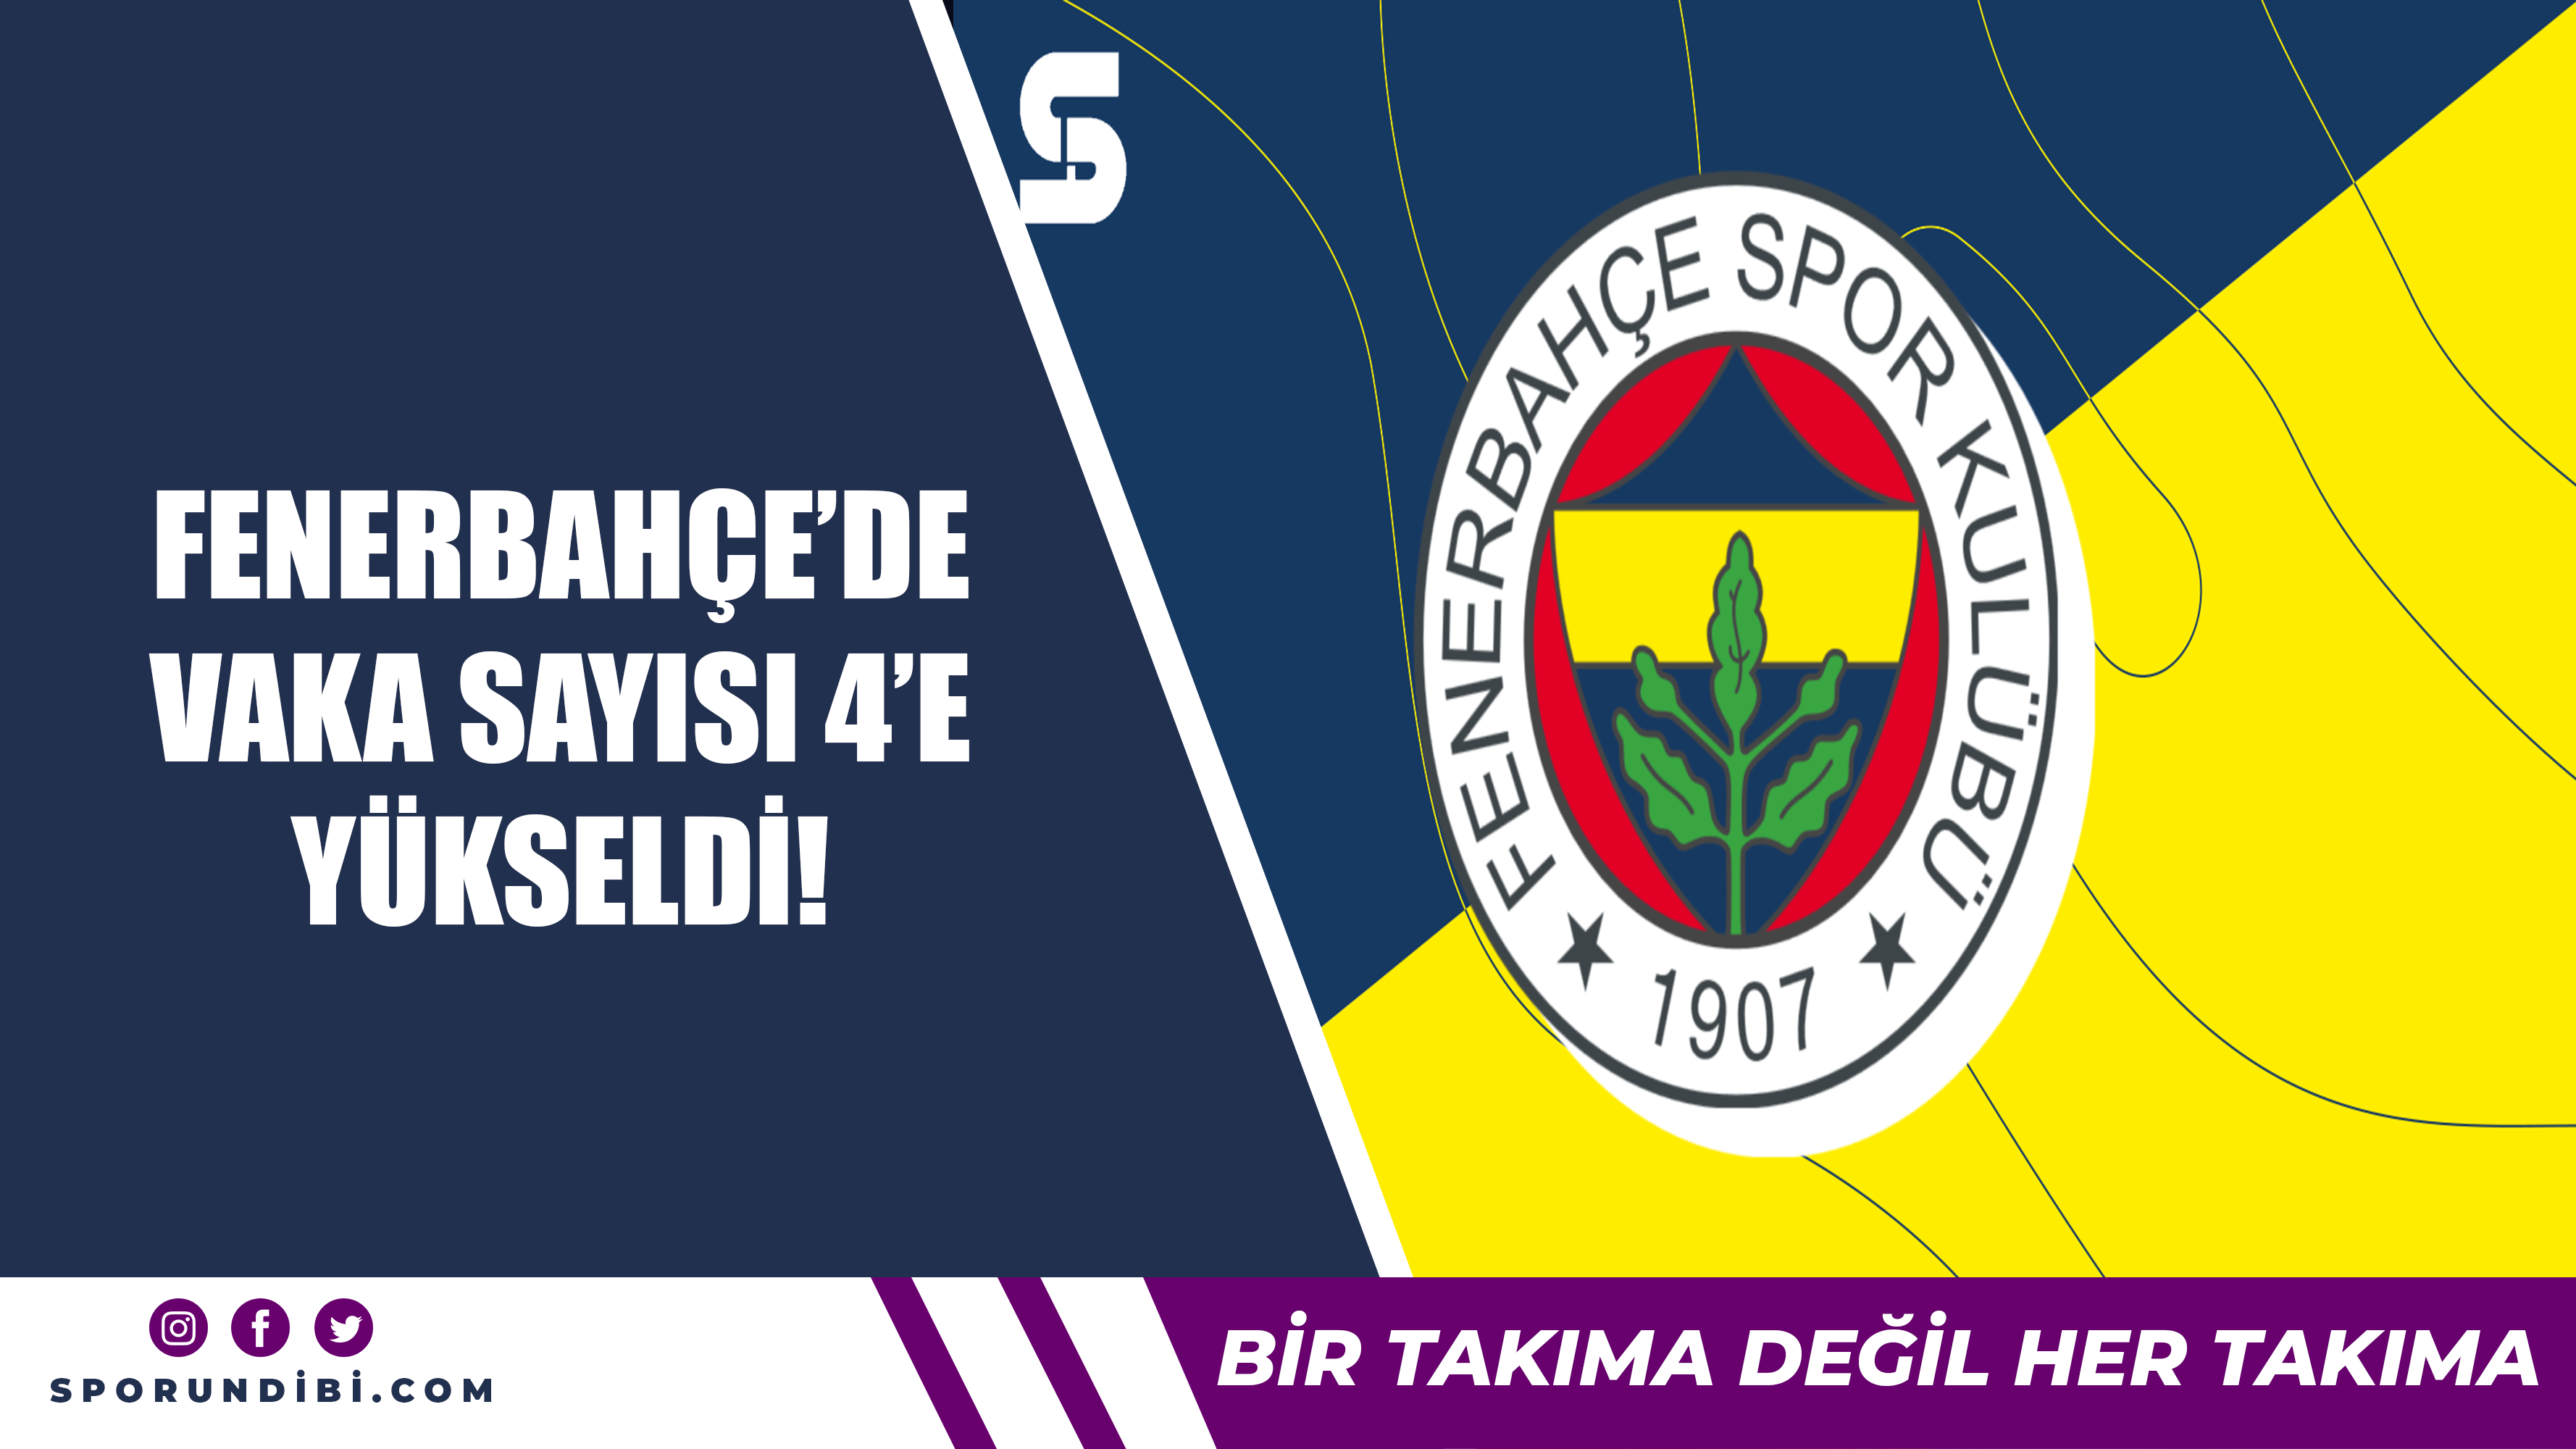 Fenerbahçe'de vaka sayısı 4'e yükseldi!